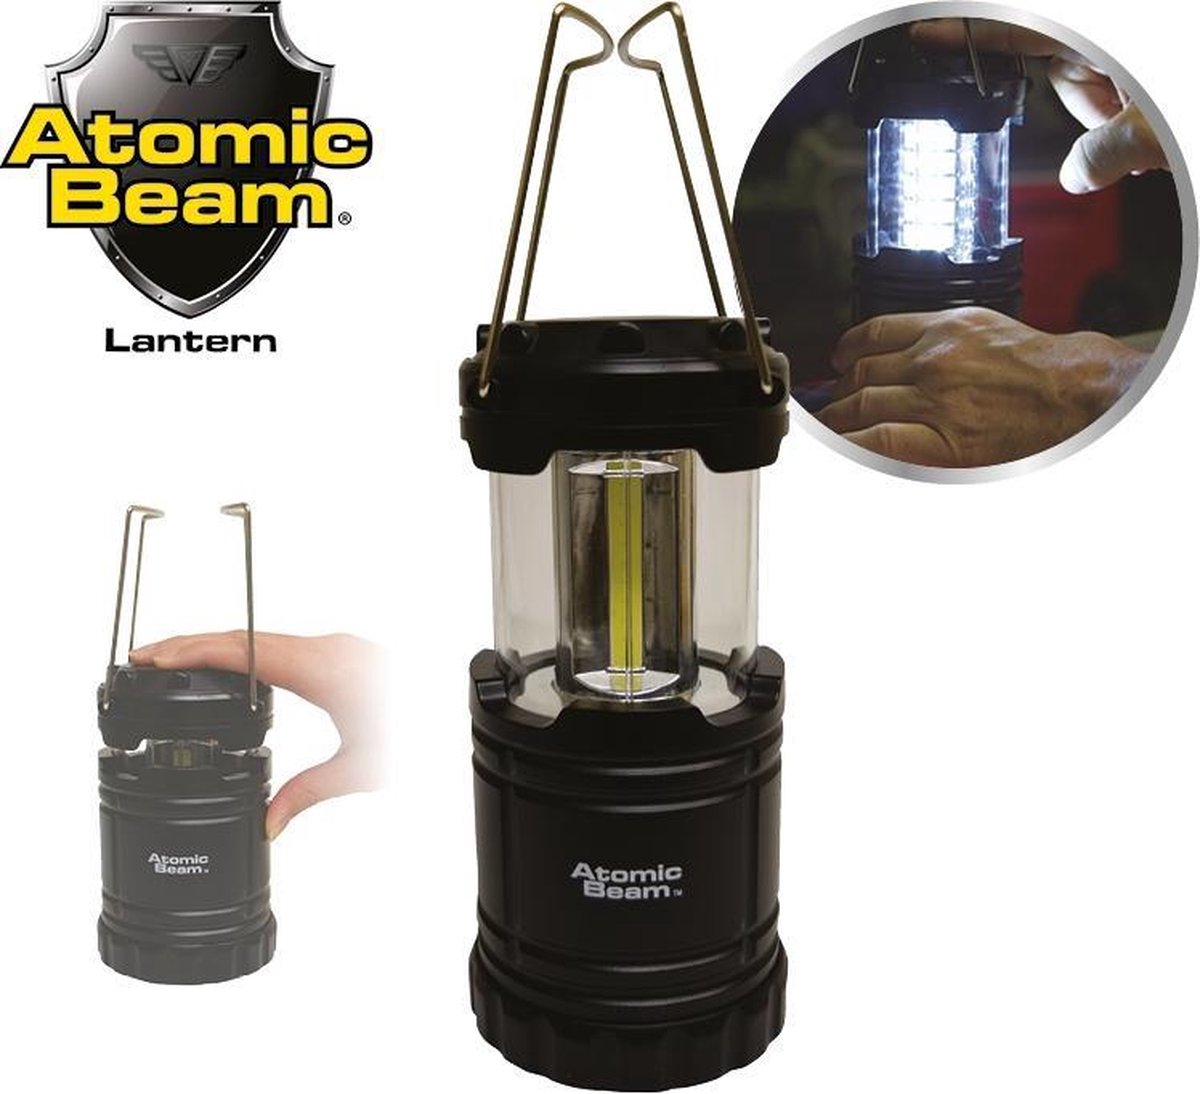 Atomic Beam 350 lumens Lantern